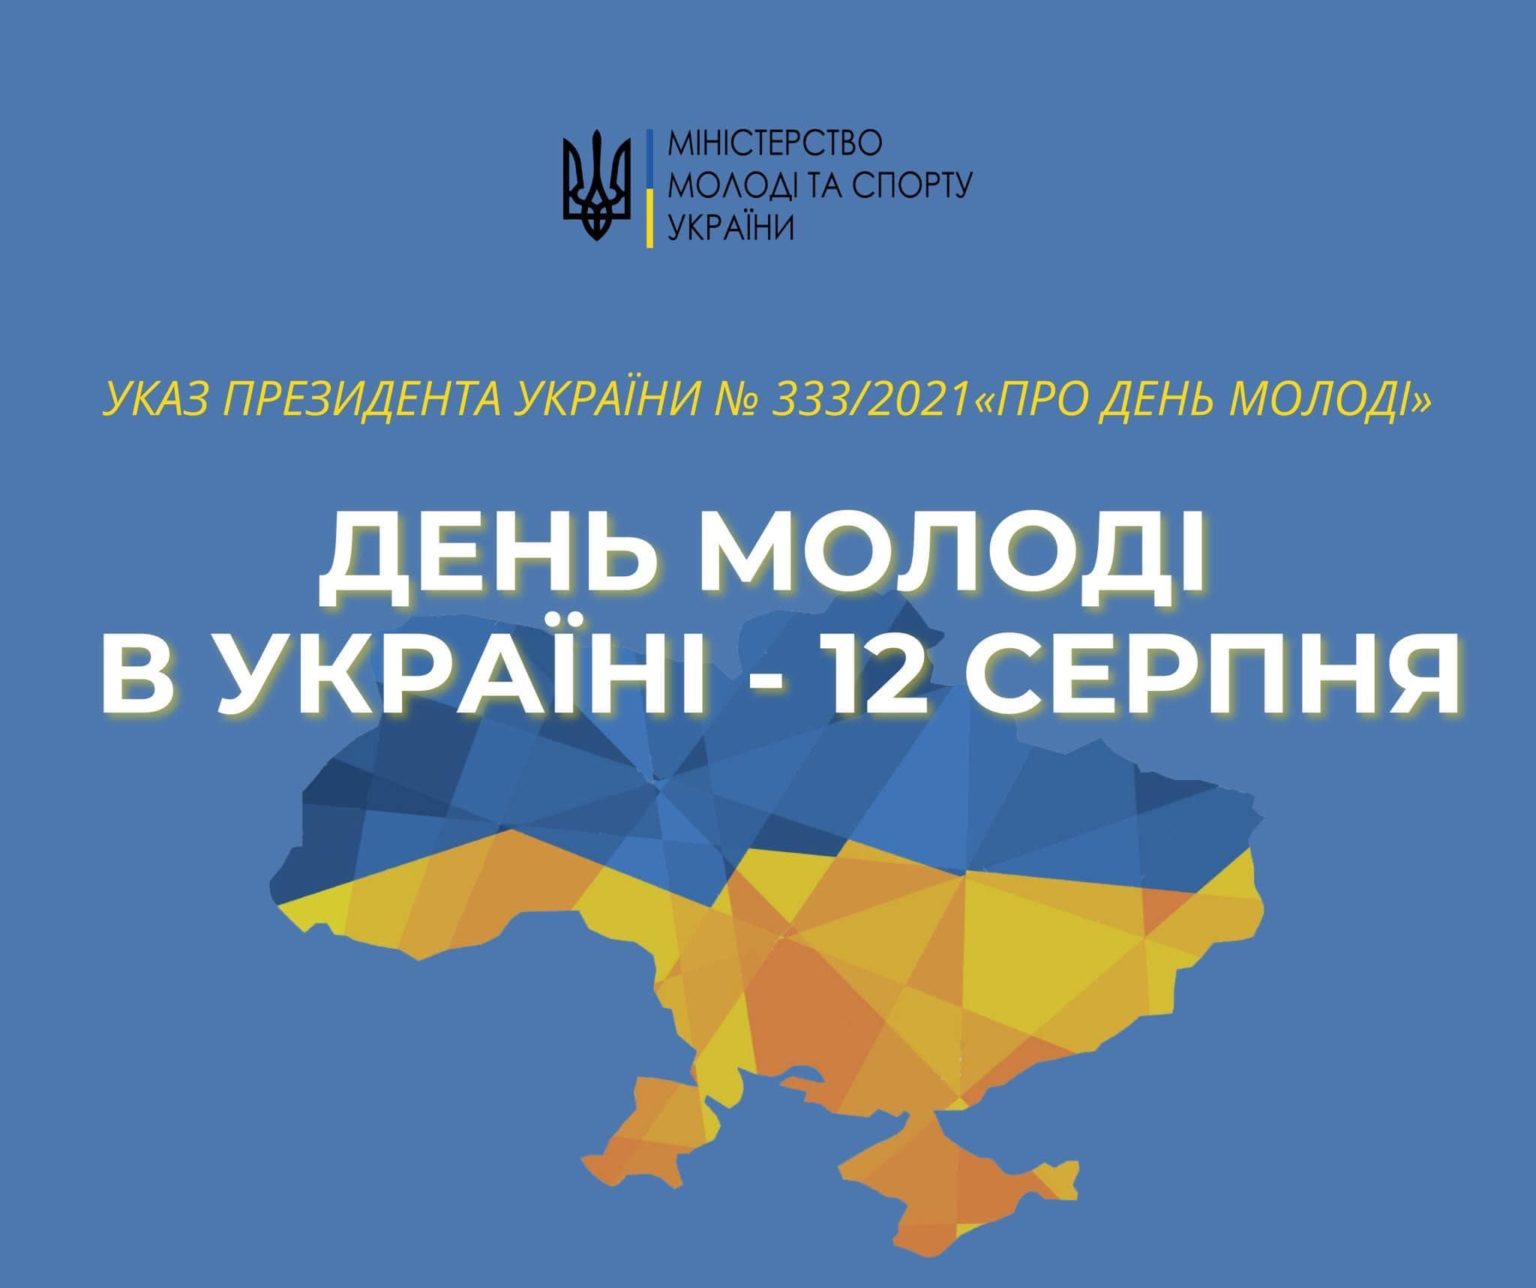 Цьогоріч відзначатимемо День молоді в Україні разом із усім світом – 12 серпня